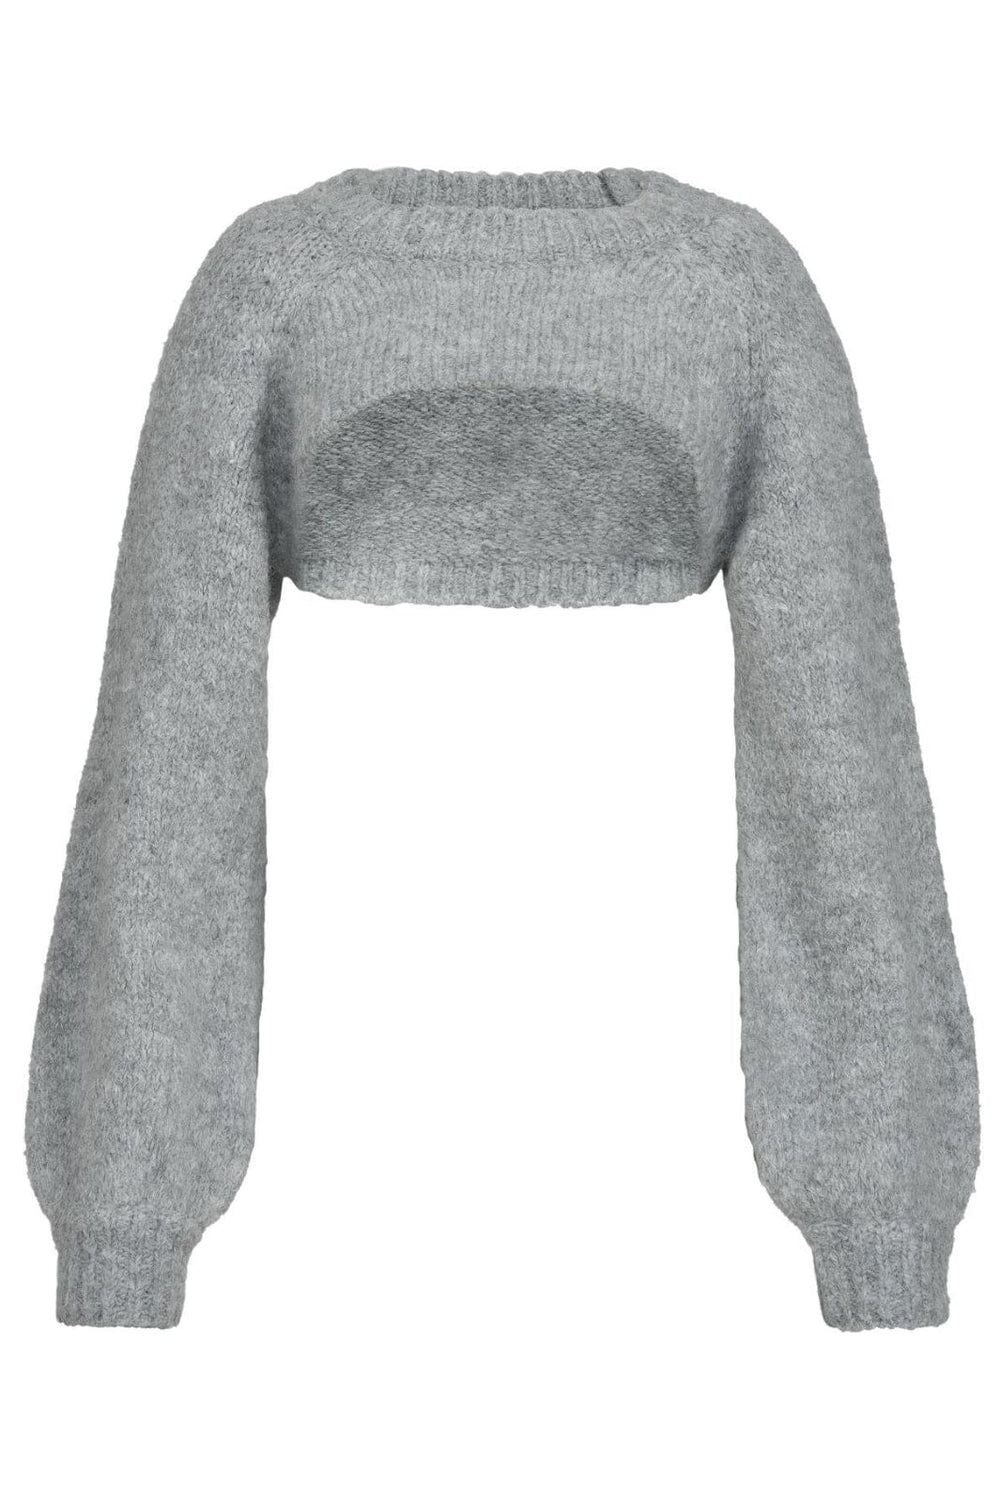 Sofie Schnoor - S234300 Sweater - Grey Mel Strikbluser 